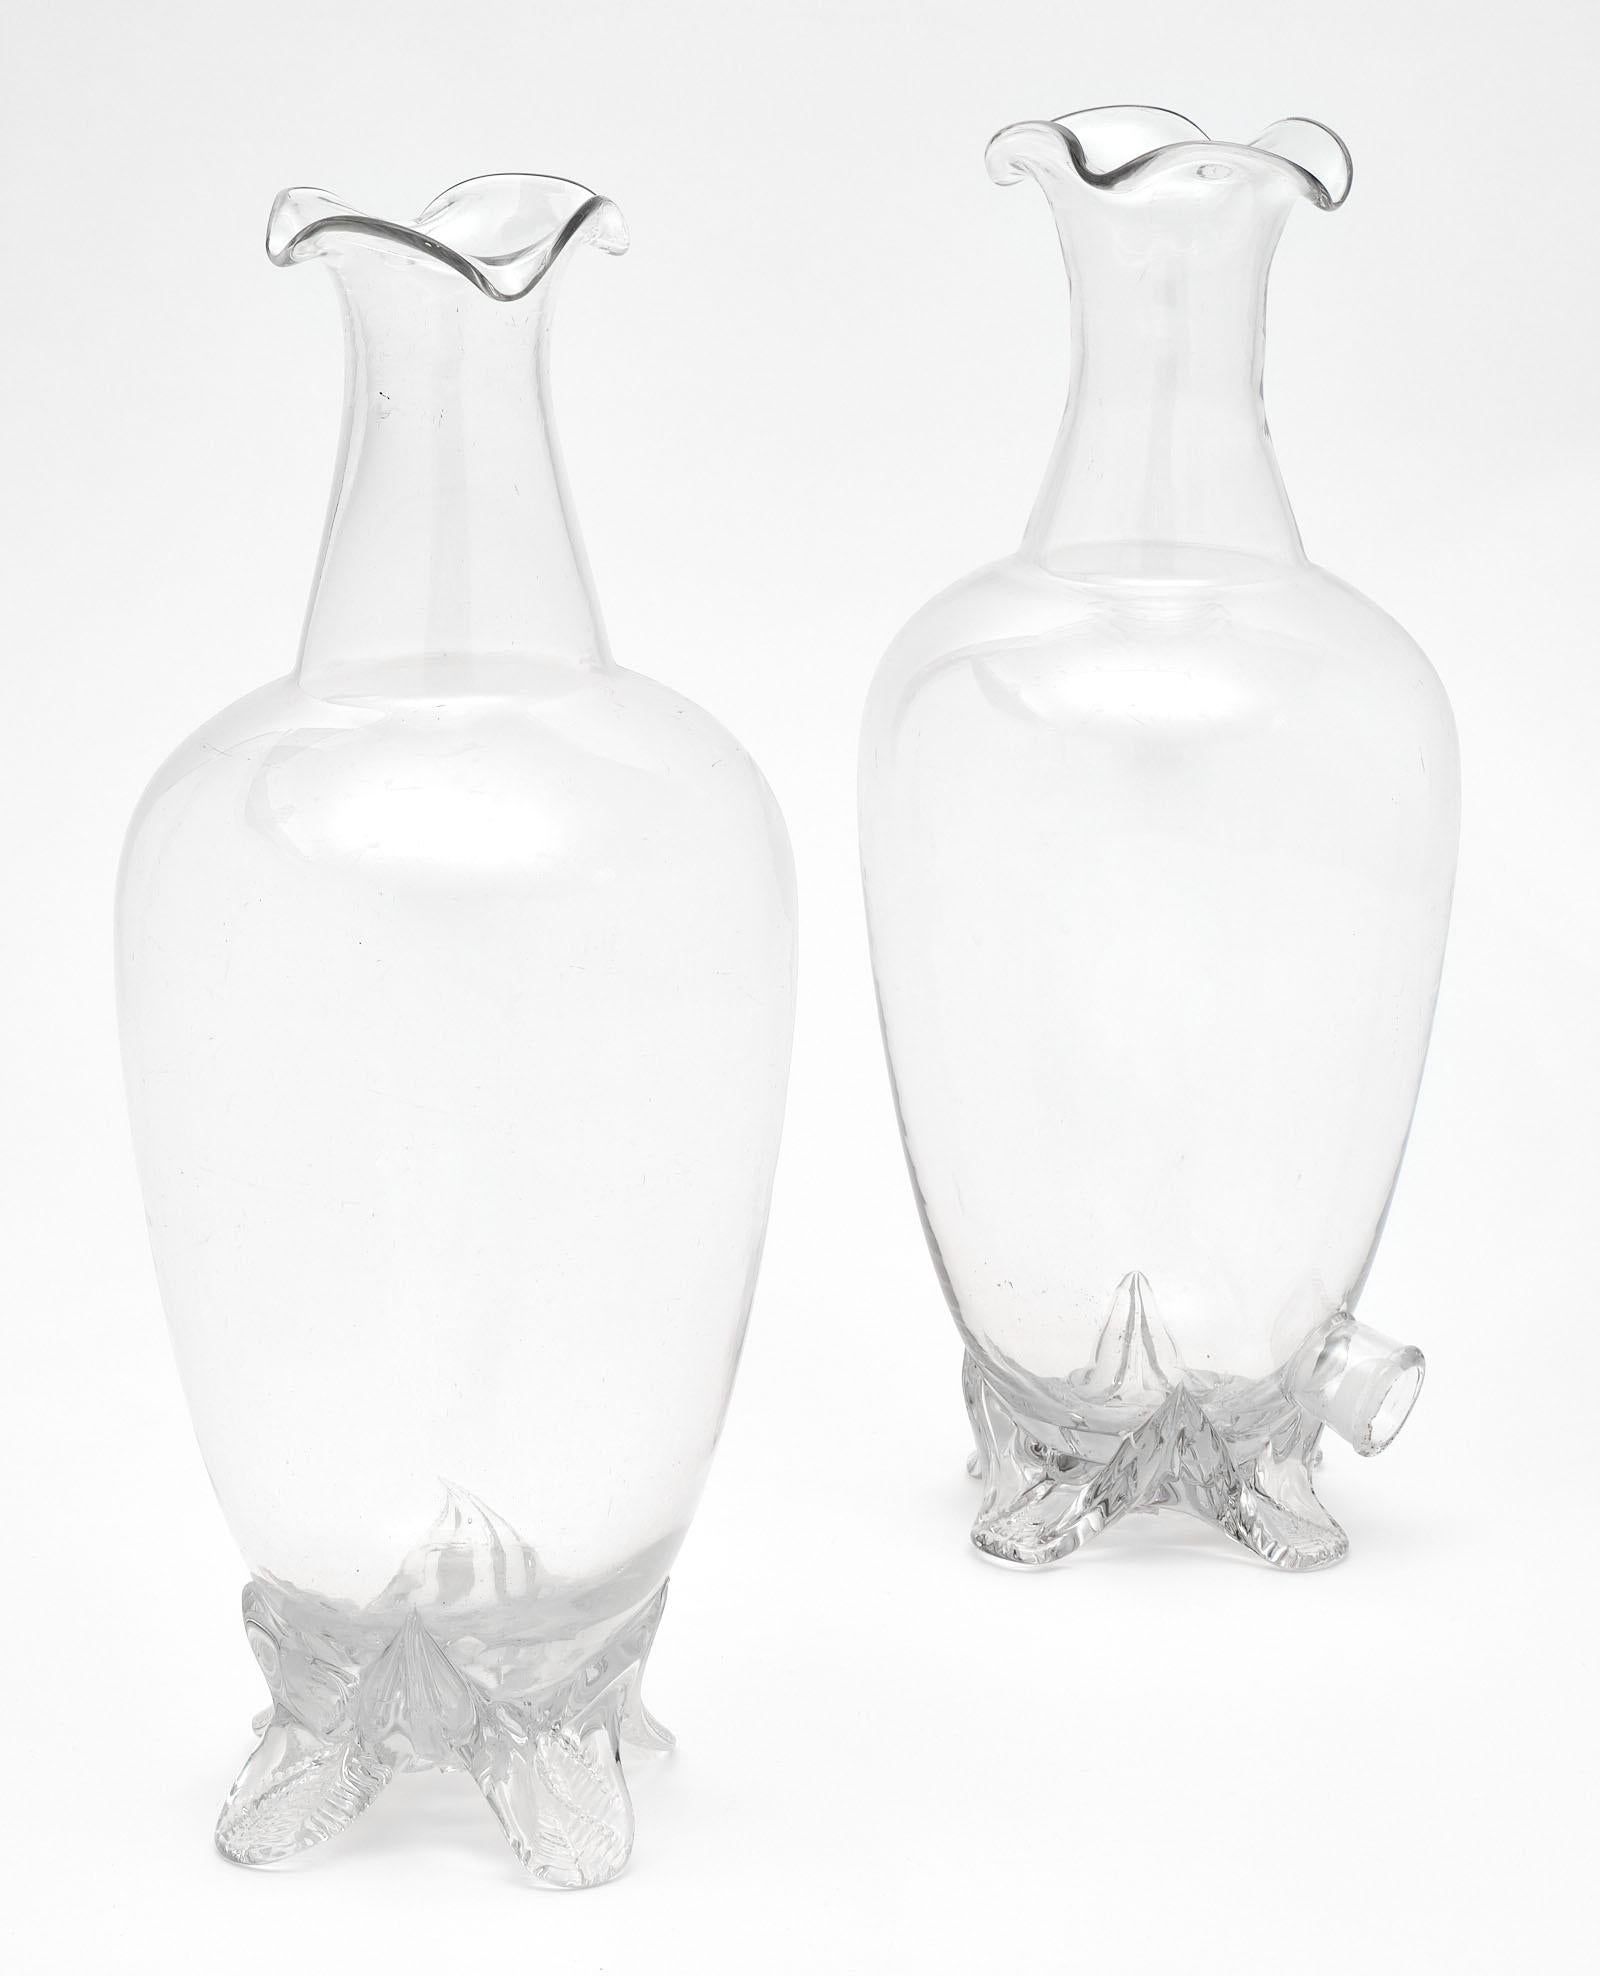 Ein Paar antiker französischer Parfümflaschen aus dem Haus Molinard in Grasse bei Nizza. Eine der Flaschen hat auch einen Zapfhahn am Boden.